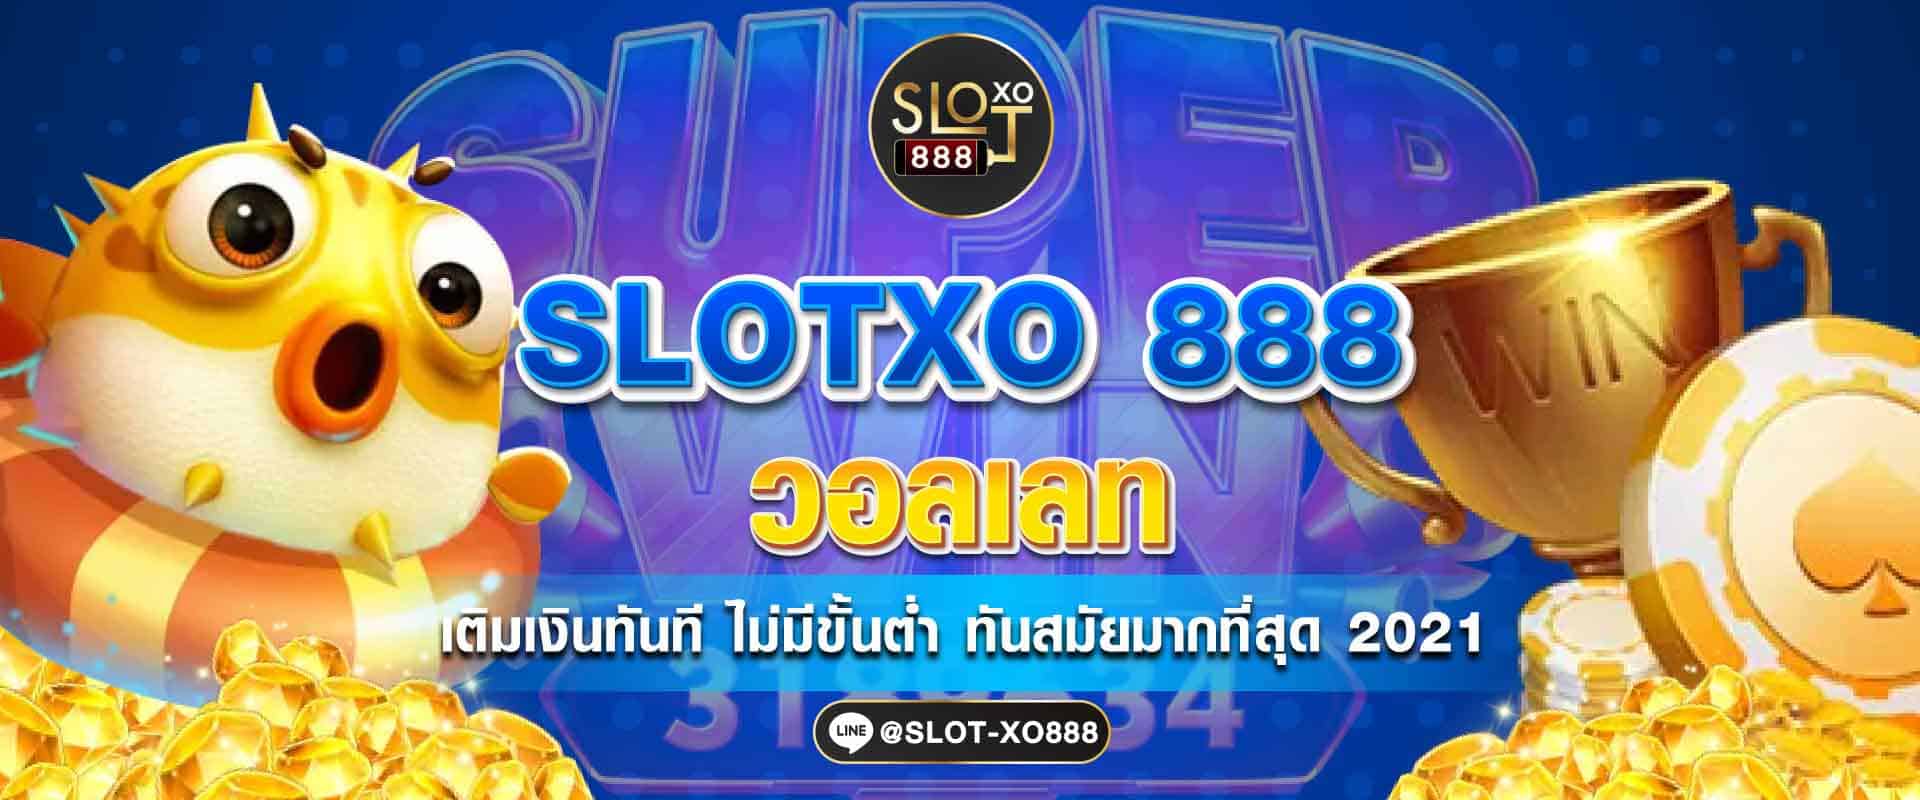 SLOXO 888